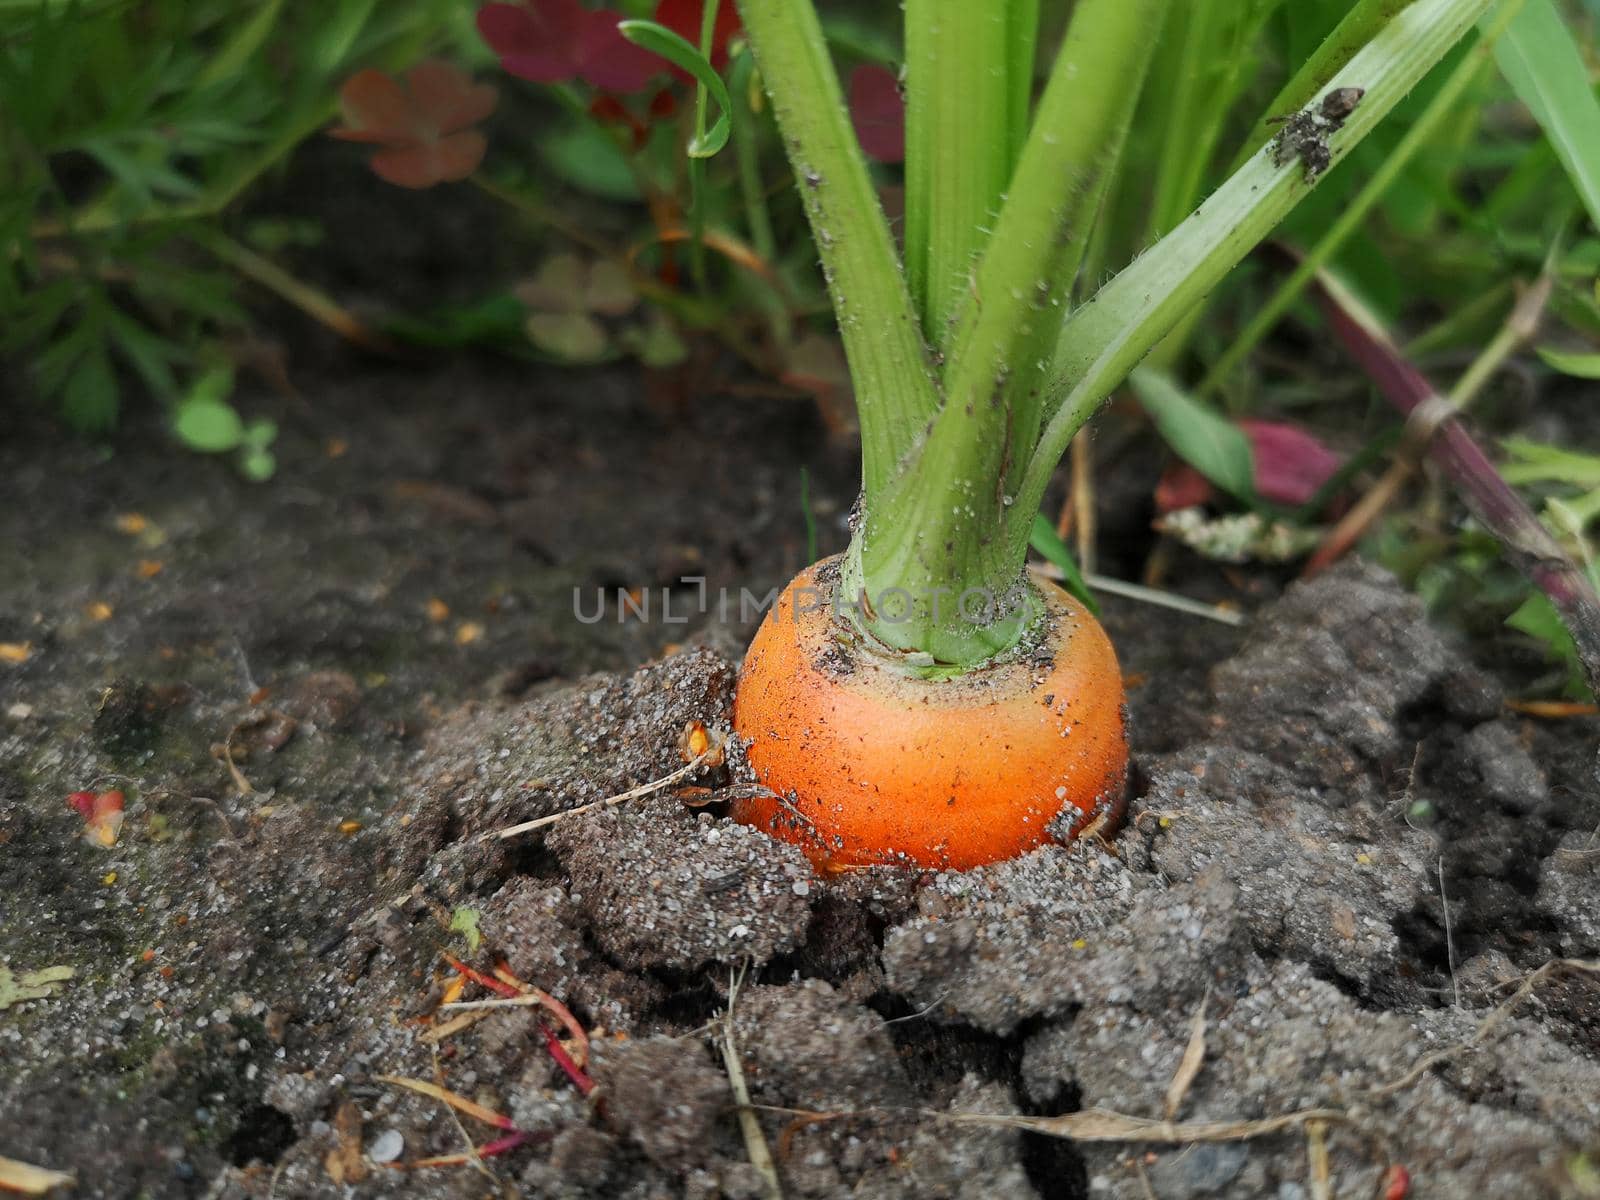 Carrot in the garden, organic farming concept.